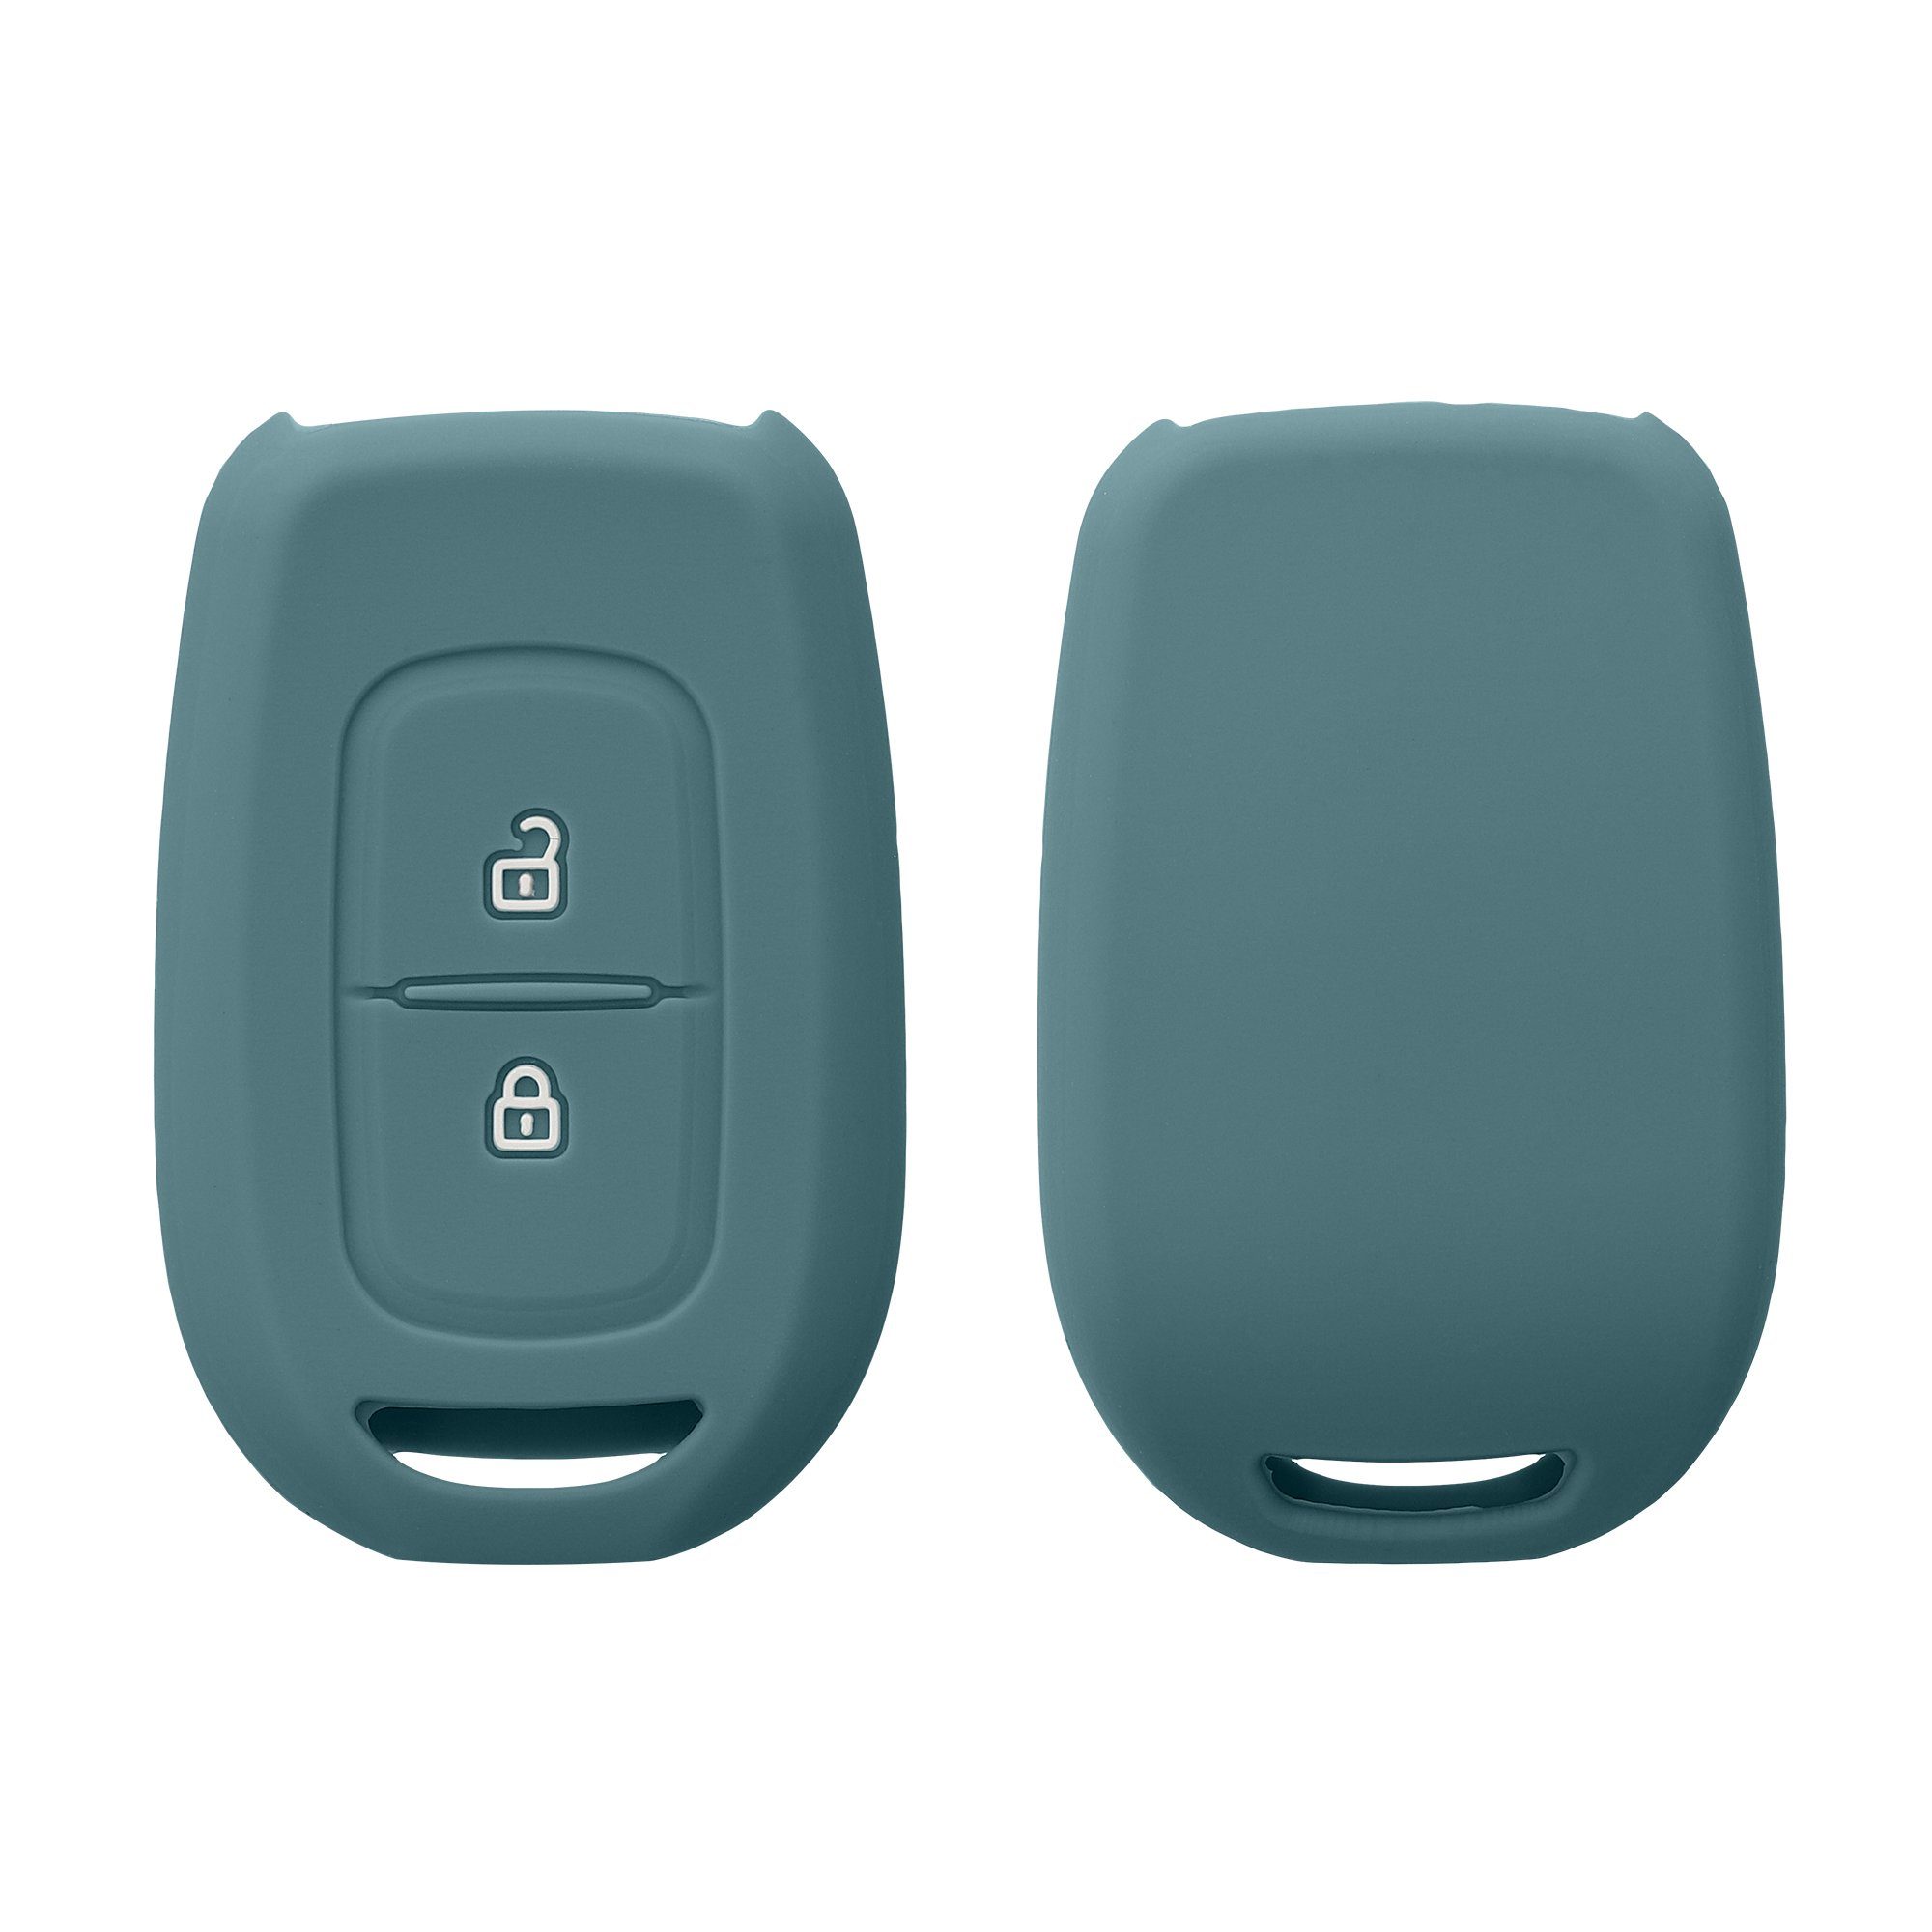 Schlüssel für Silikon Schlüsseltasche Renault Case Hülle Cover Autoschlüssel Dacia, kwmobile Schlüsselhülle